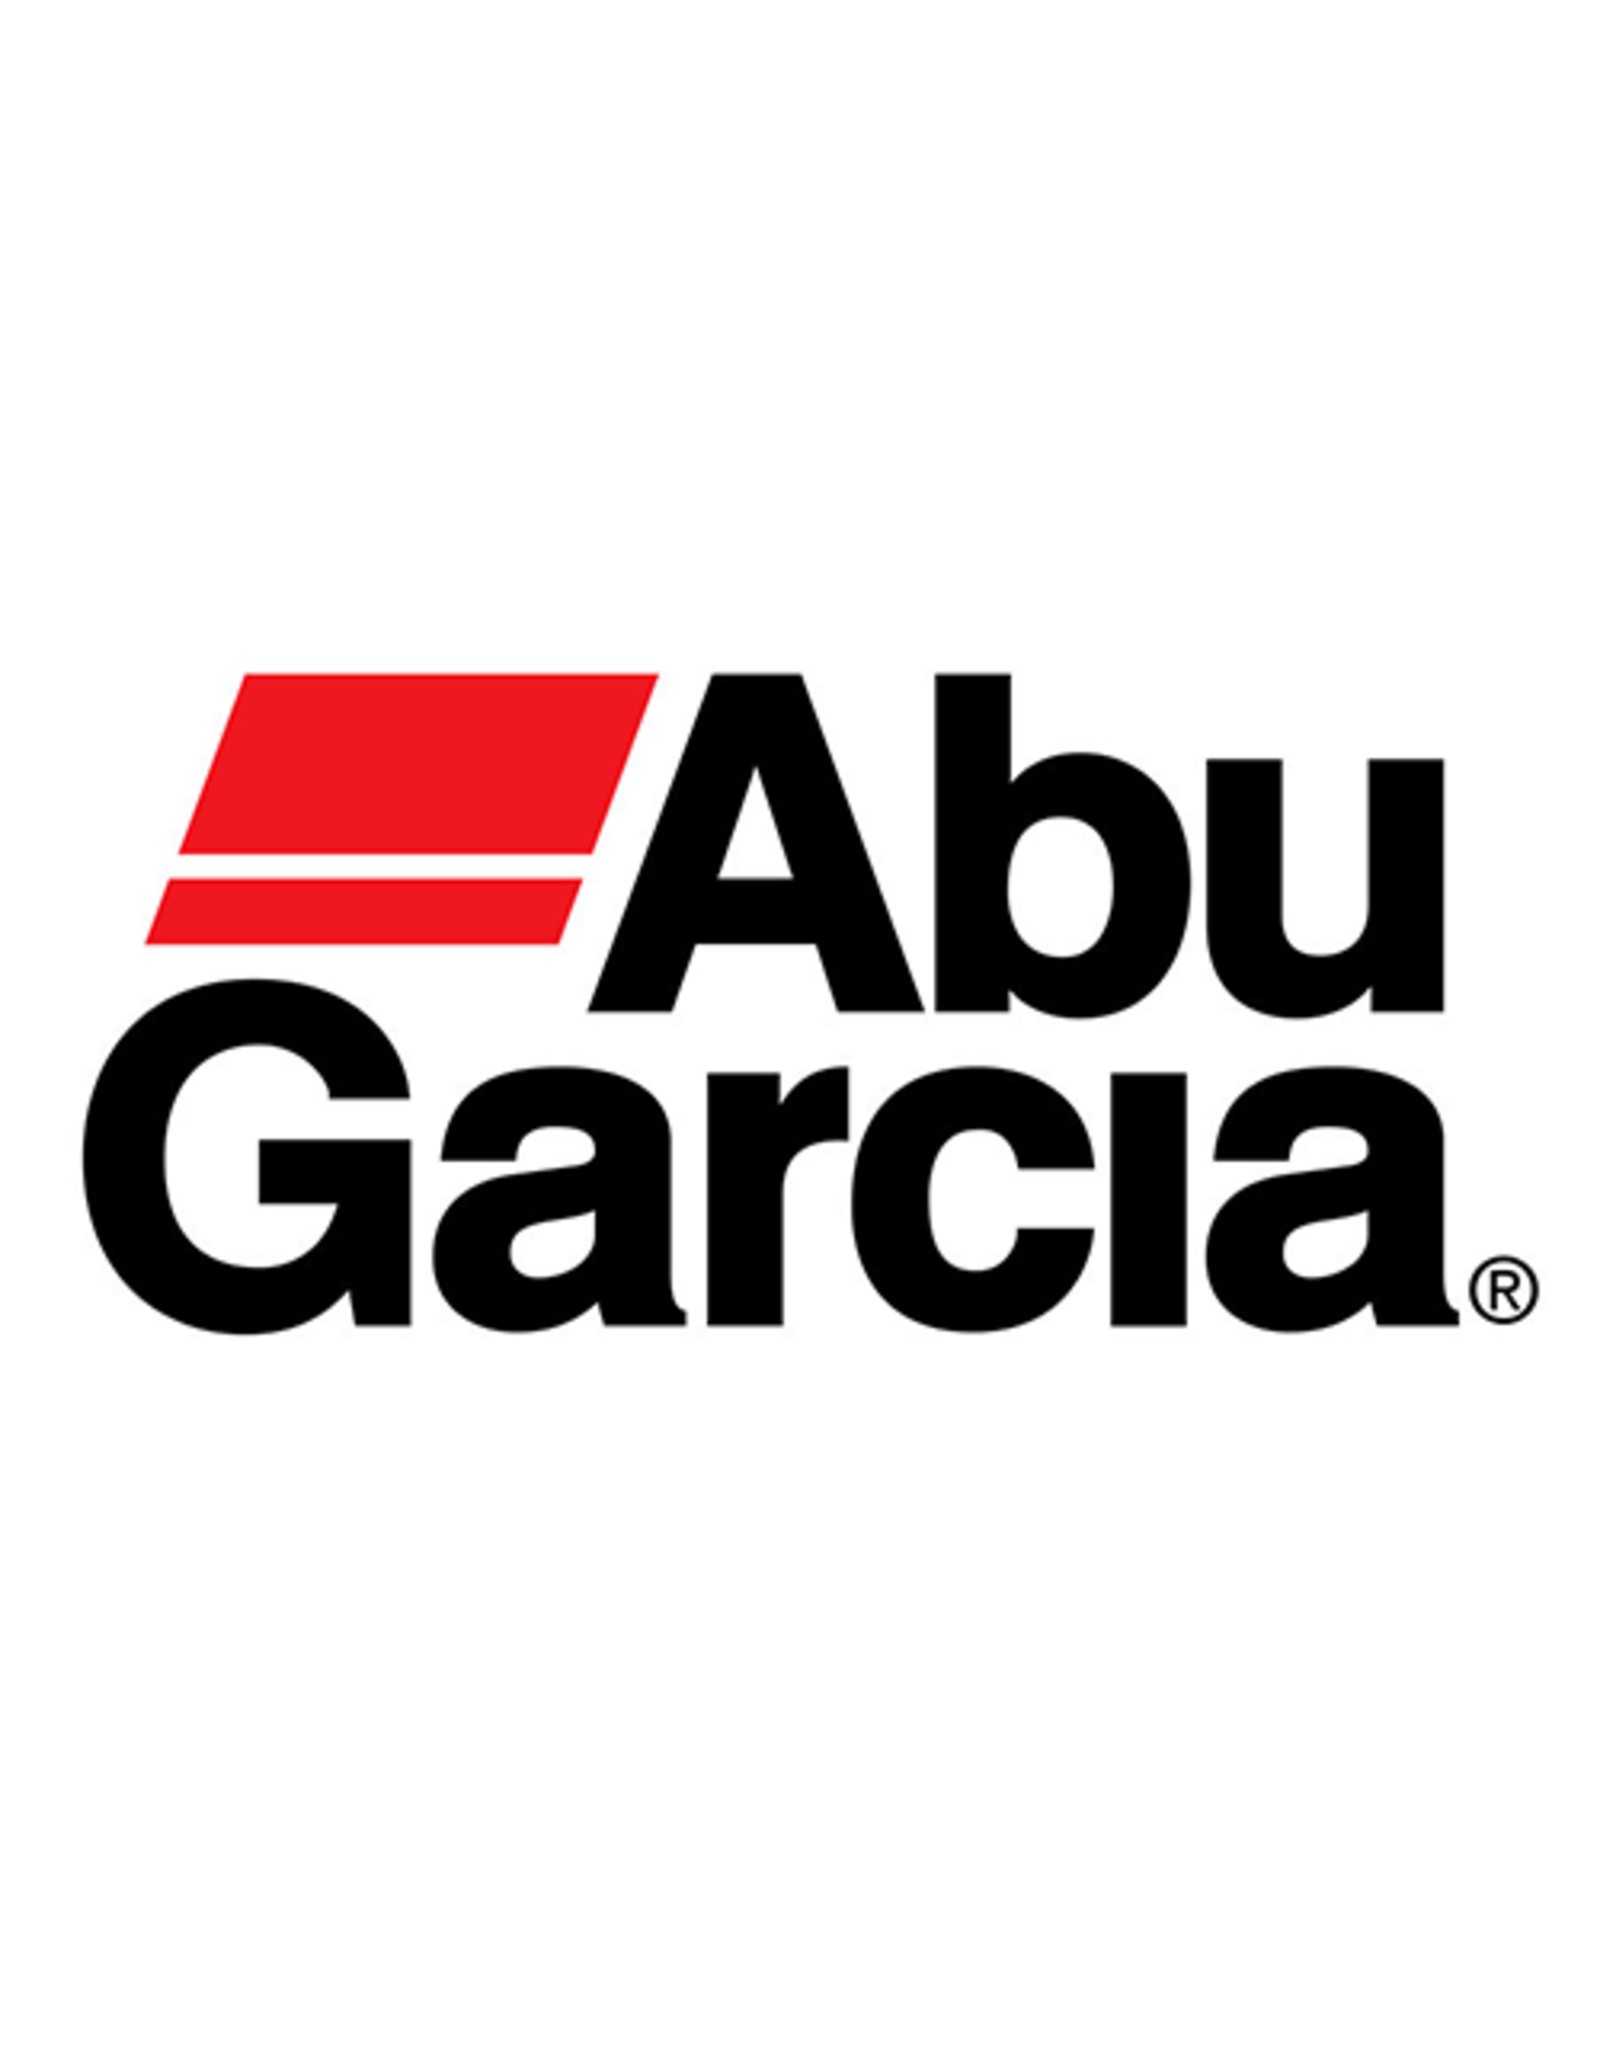 Abu Garcia 1185798  HANDLE WASHER